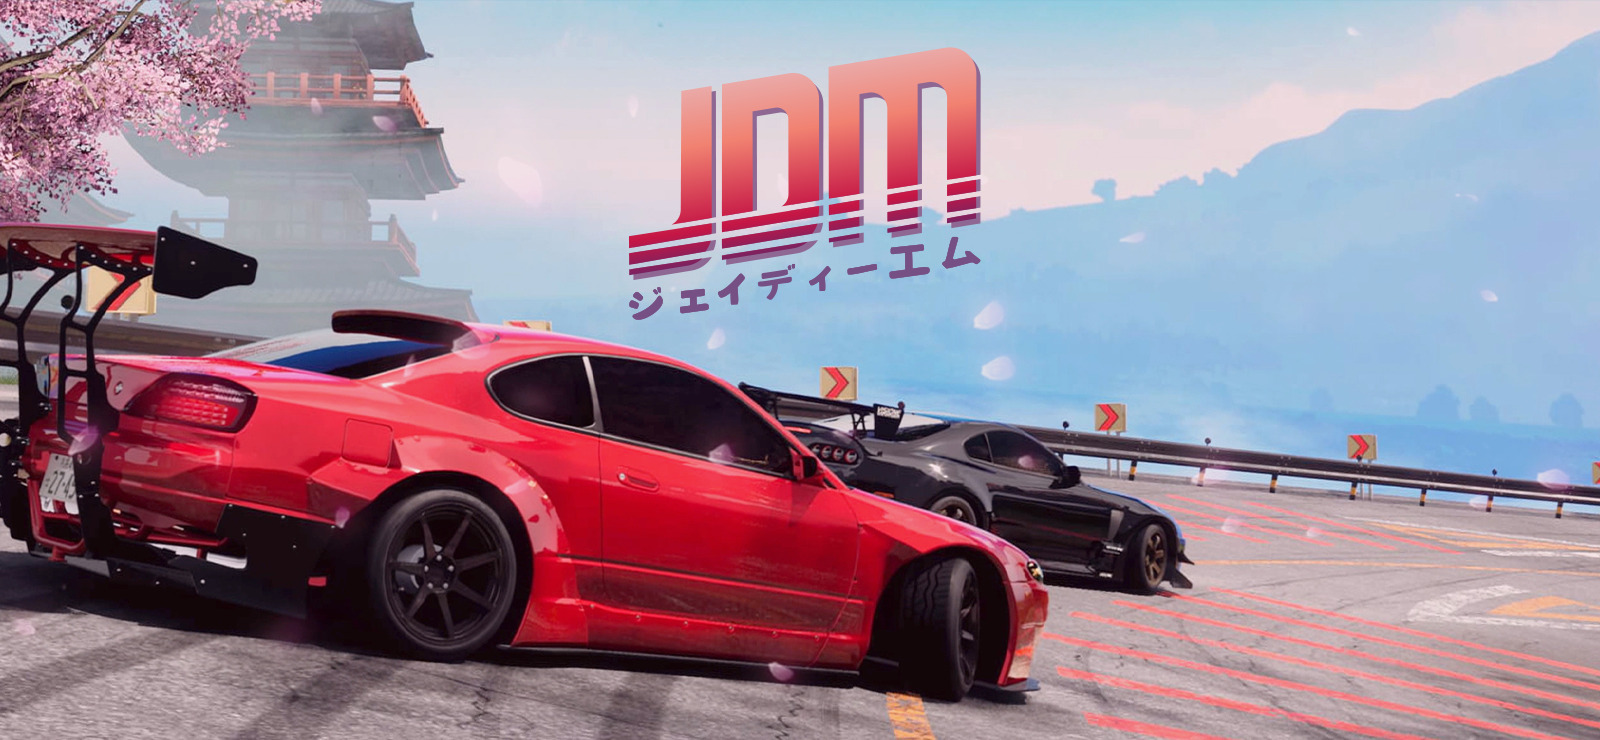 Japanese Drift Master: The Open World Drifting Game Set in Japan